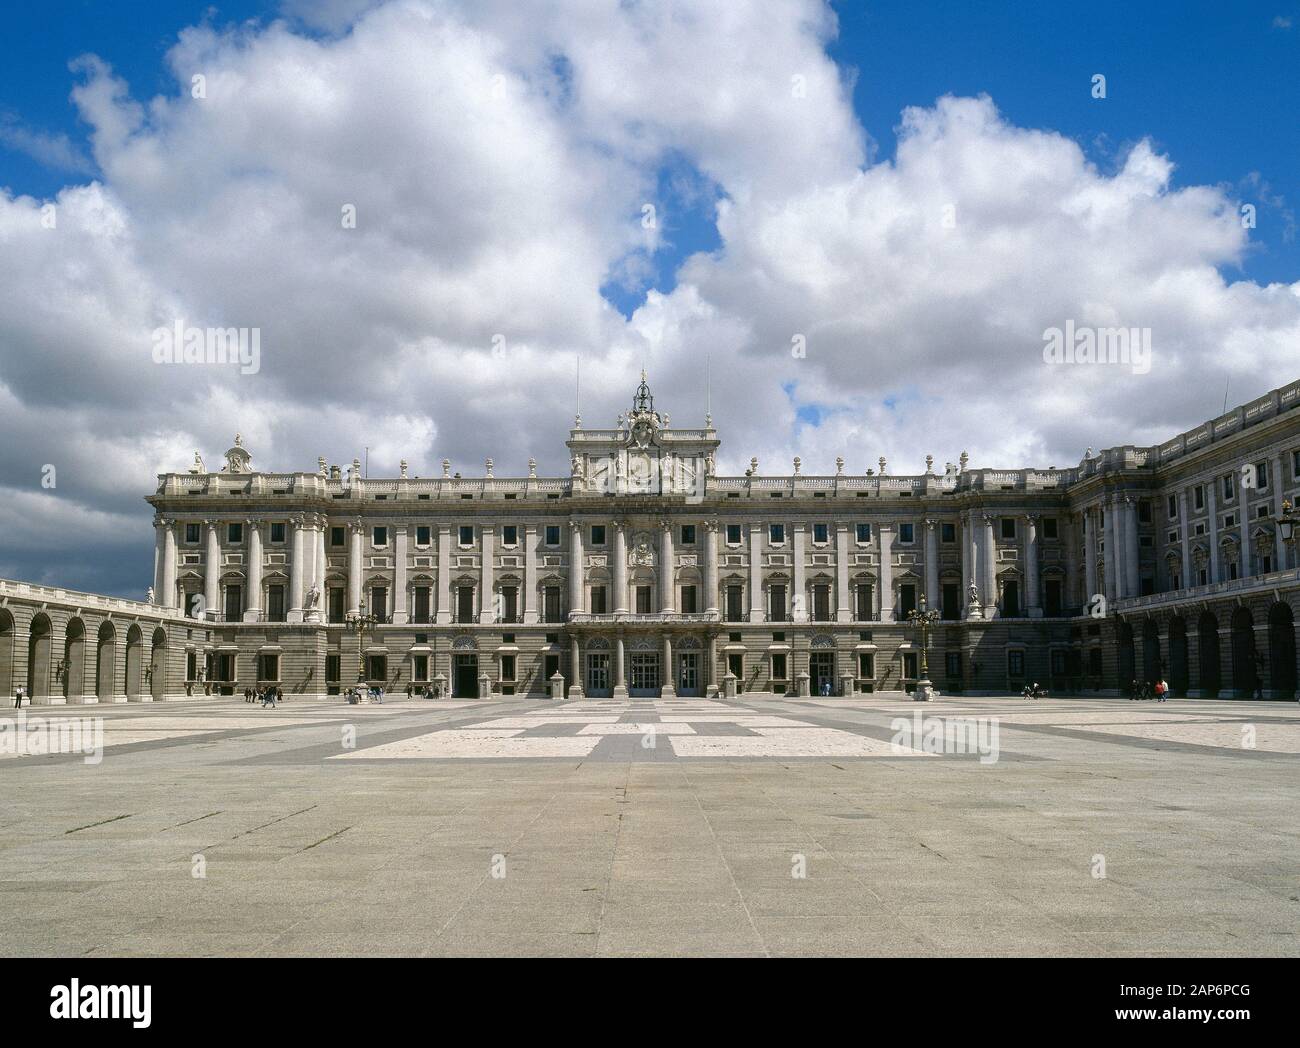 L'Espagne, Madrid. Palais Royal. Il a été construit sur ordre de Philip C. Le projet a été commandé à Giovanni Battista Sachetti (1690-1764). Sa construction a commencé en 1738 et le bâtiment a été achevé en 1764. Façade et les ailes du bâtiment de la place du manège militaire. Banque D'Images